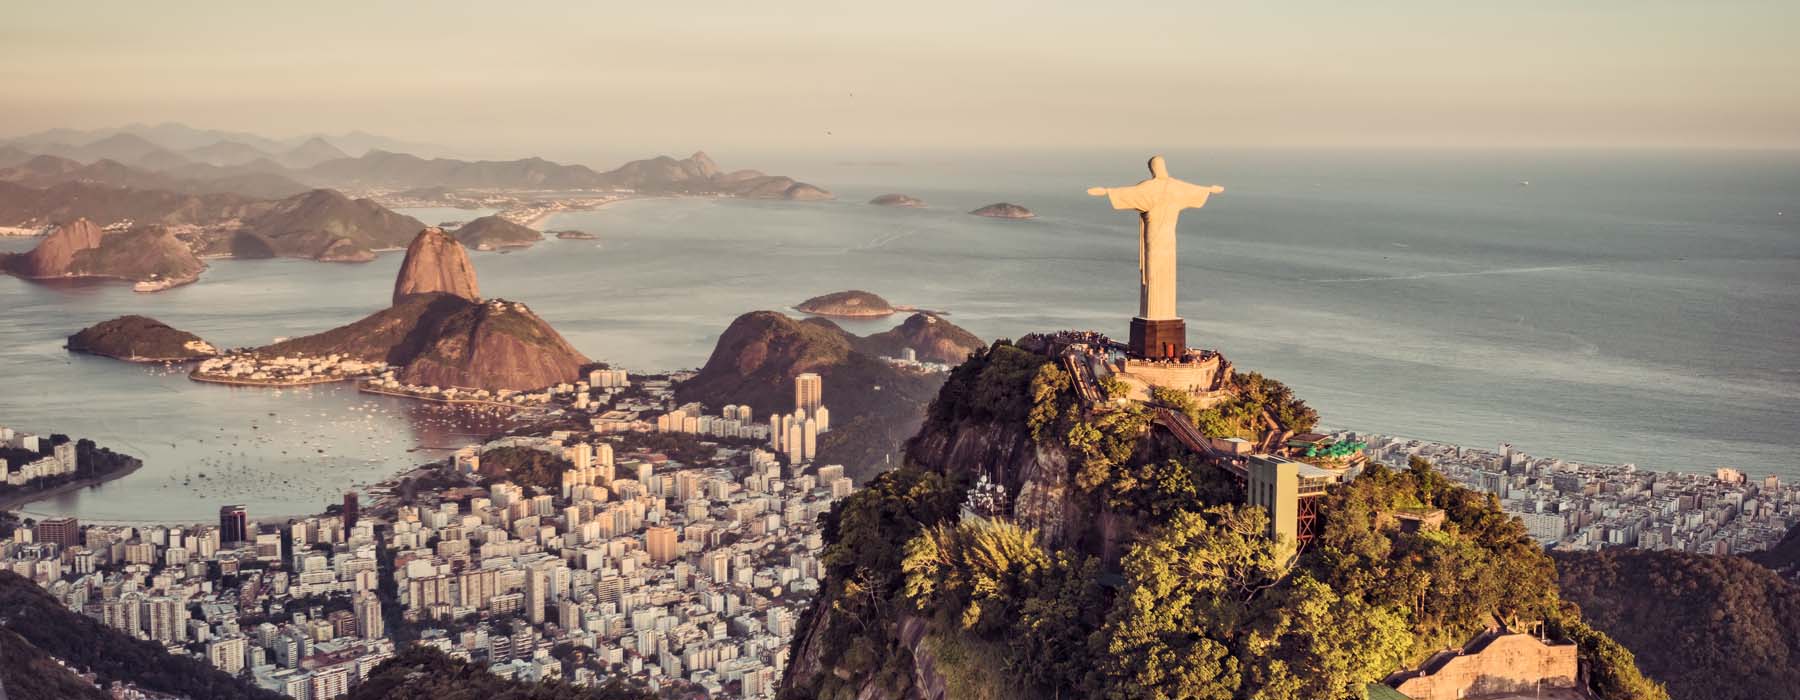 Brazil<br class="hidden-md hidden-lg" /> Travel Bucket List